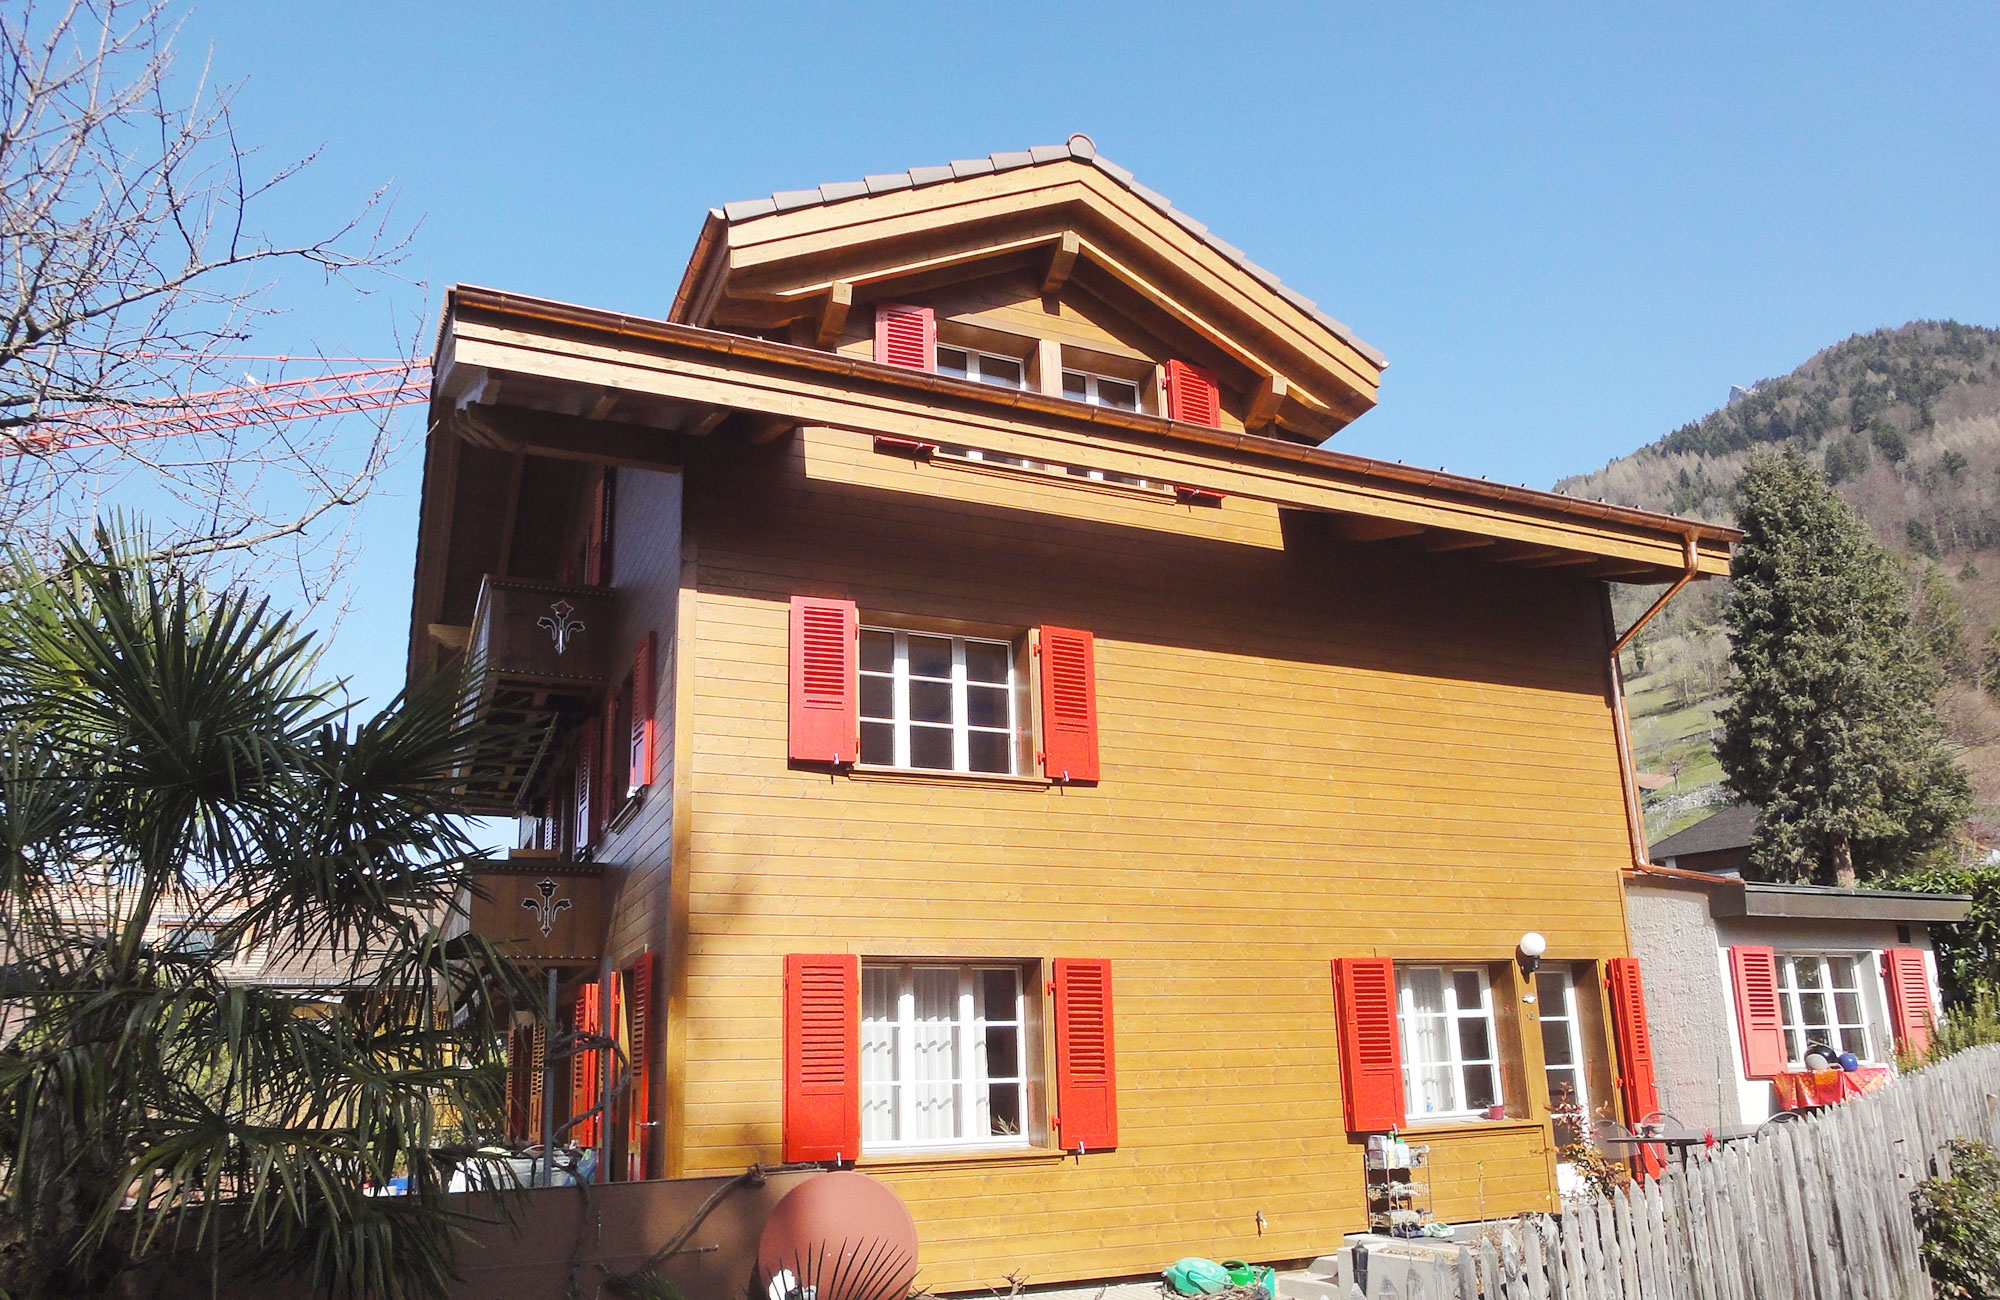 Haus mit Fassade aus Holz